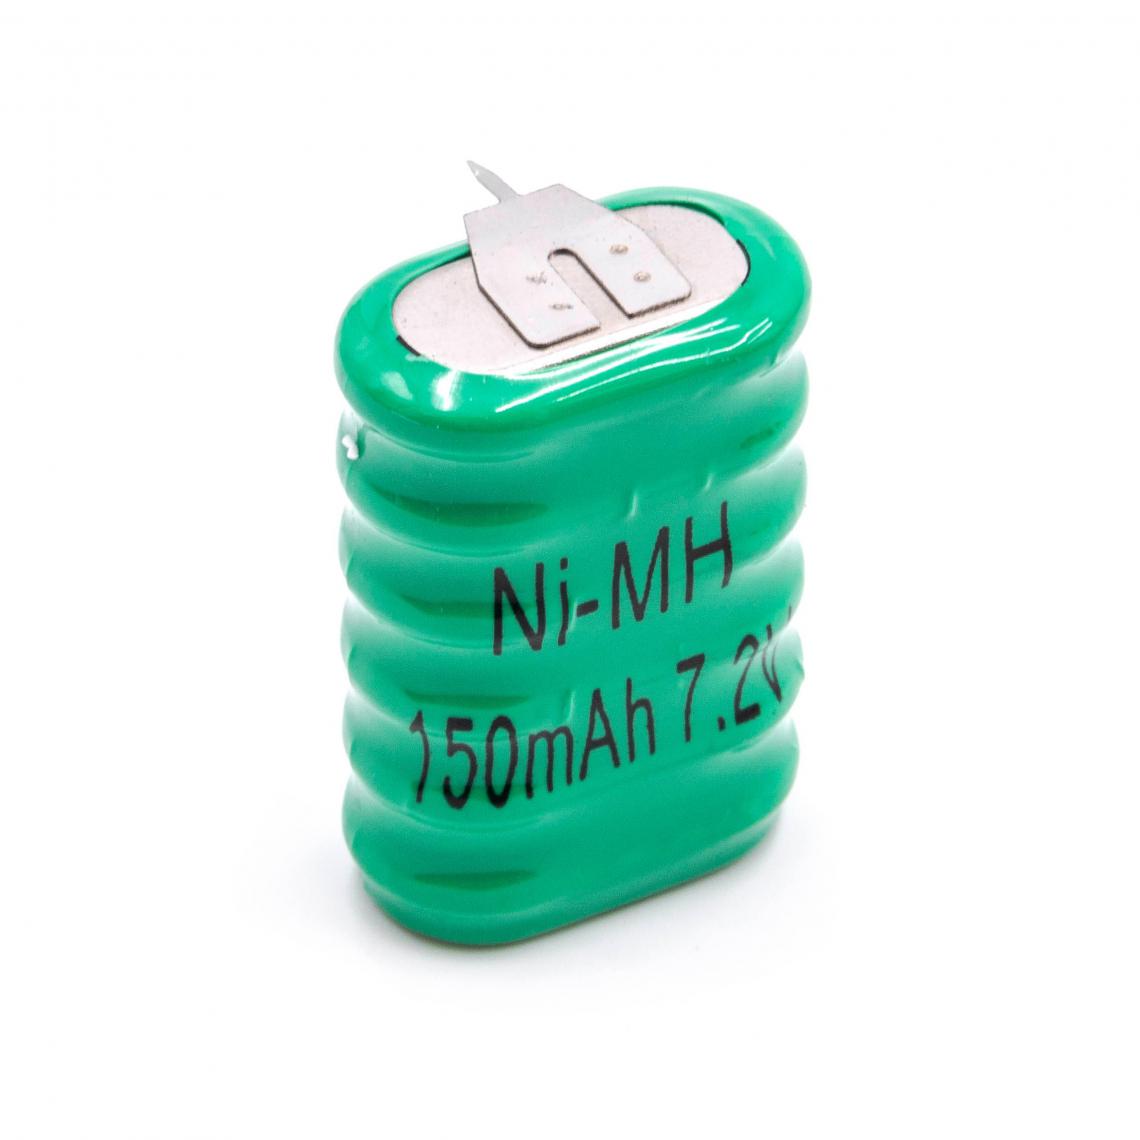 Vhbw - vhbw NiMH pile bouton de remplacement (6x cellule) 3 épingles type 6/V150H 150mAh 7.2V convient pour les batteries de modélisme etc. - Autre appareil de mesure